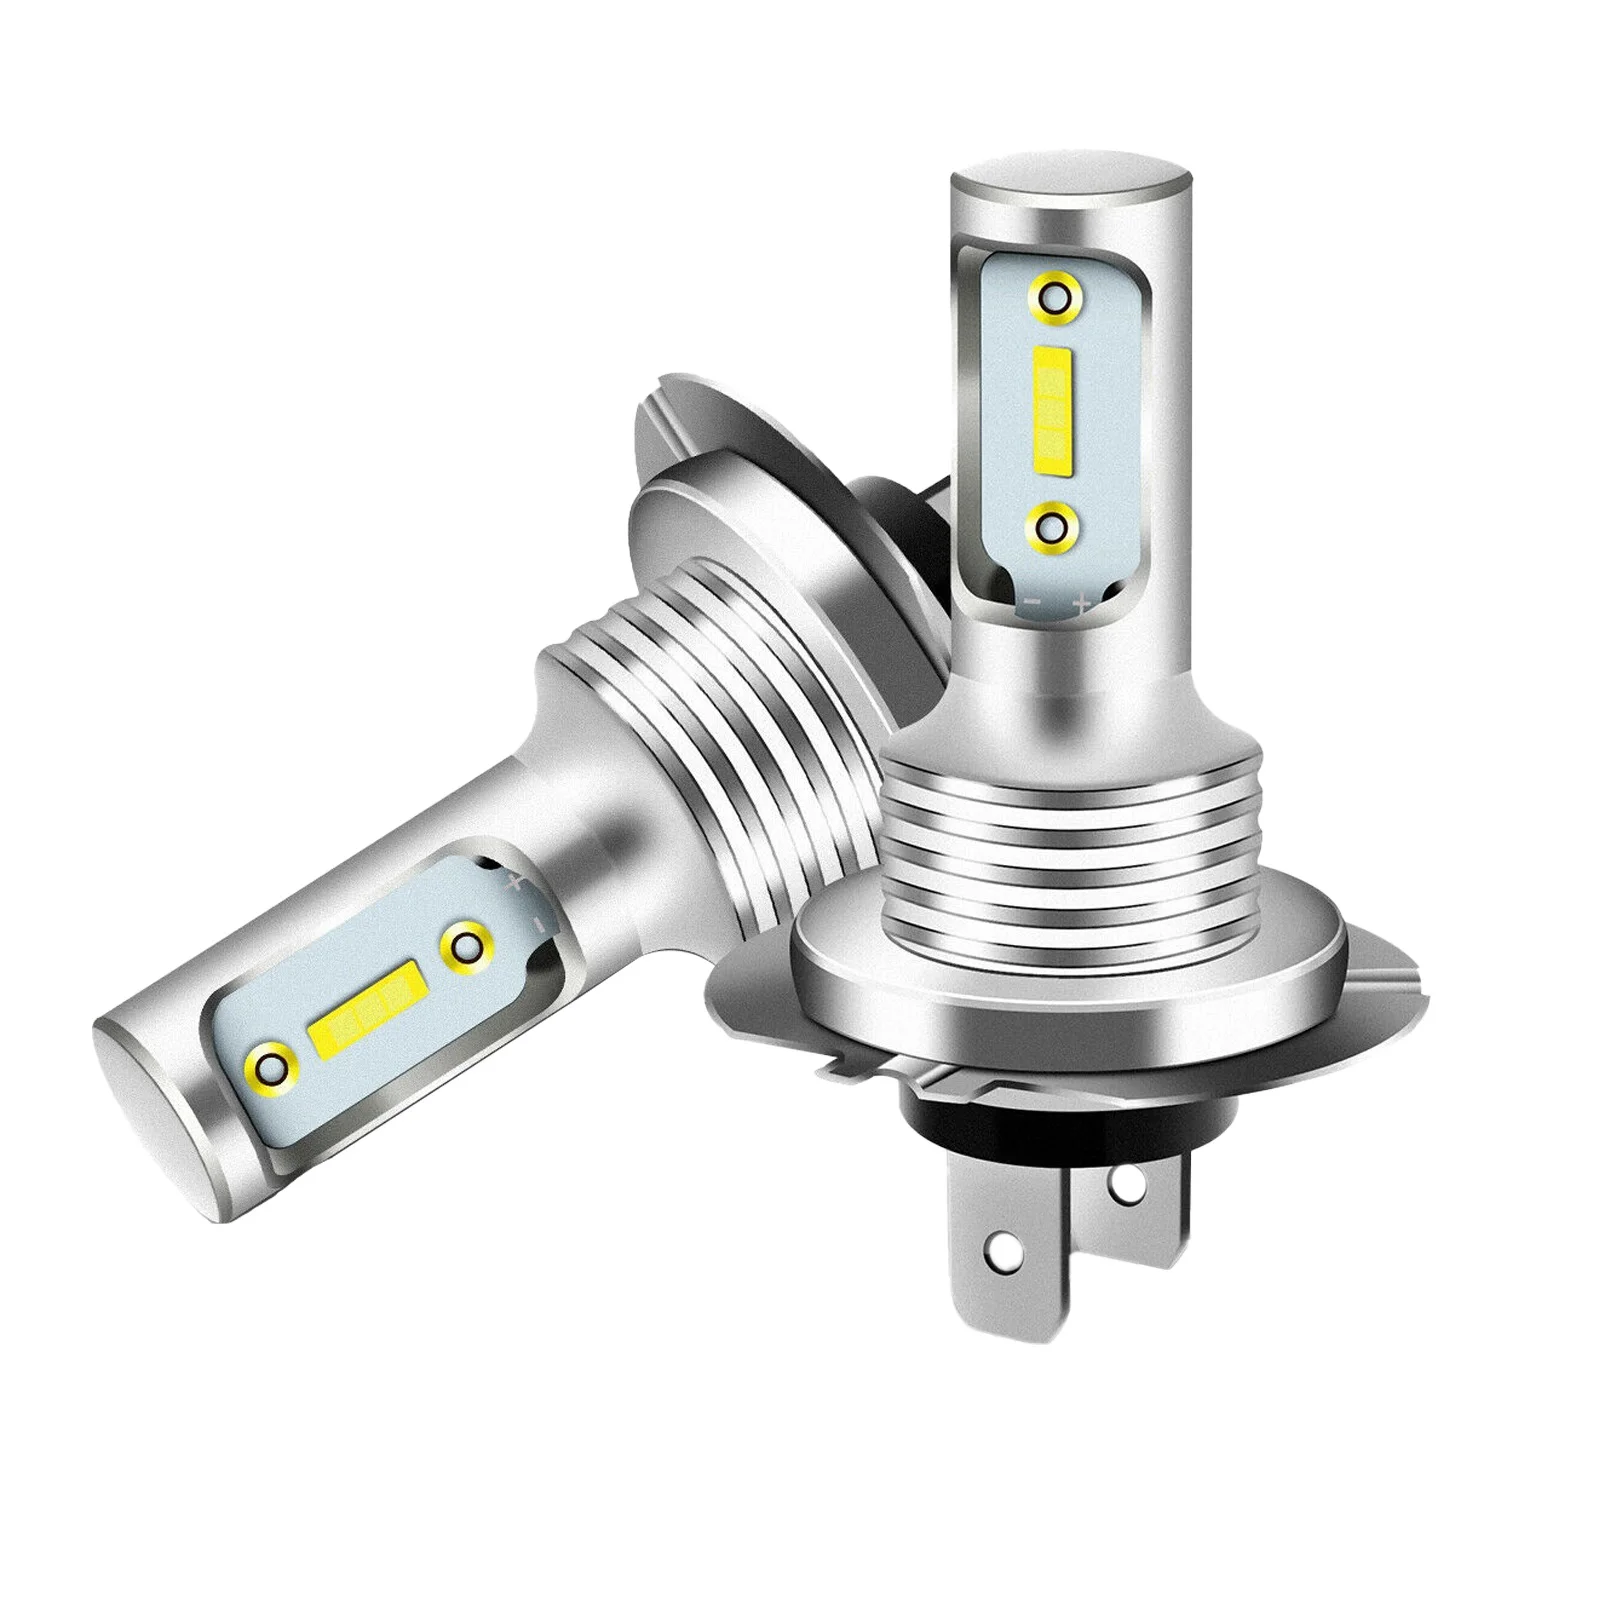 2X H7 LED Headlight 6000K Super White 110W 8000LM Headlight Kit Fog Light Bulbs Kit High Low Beam